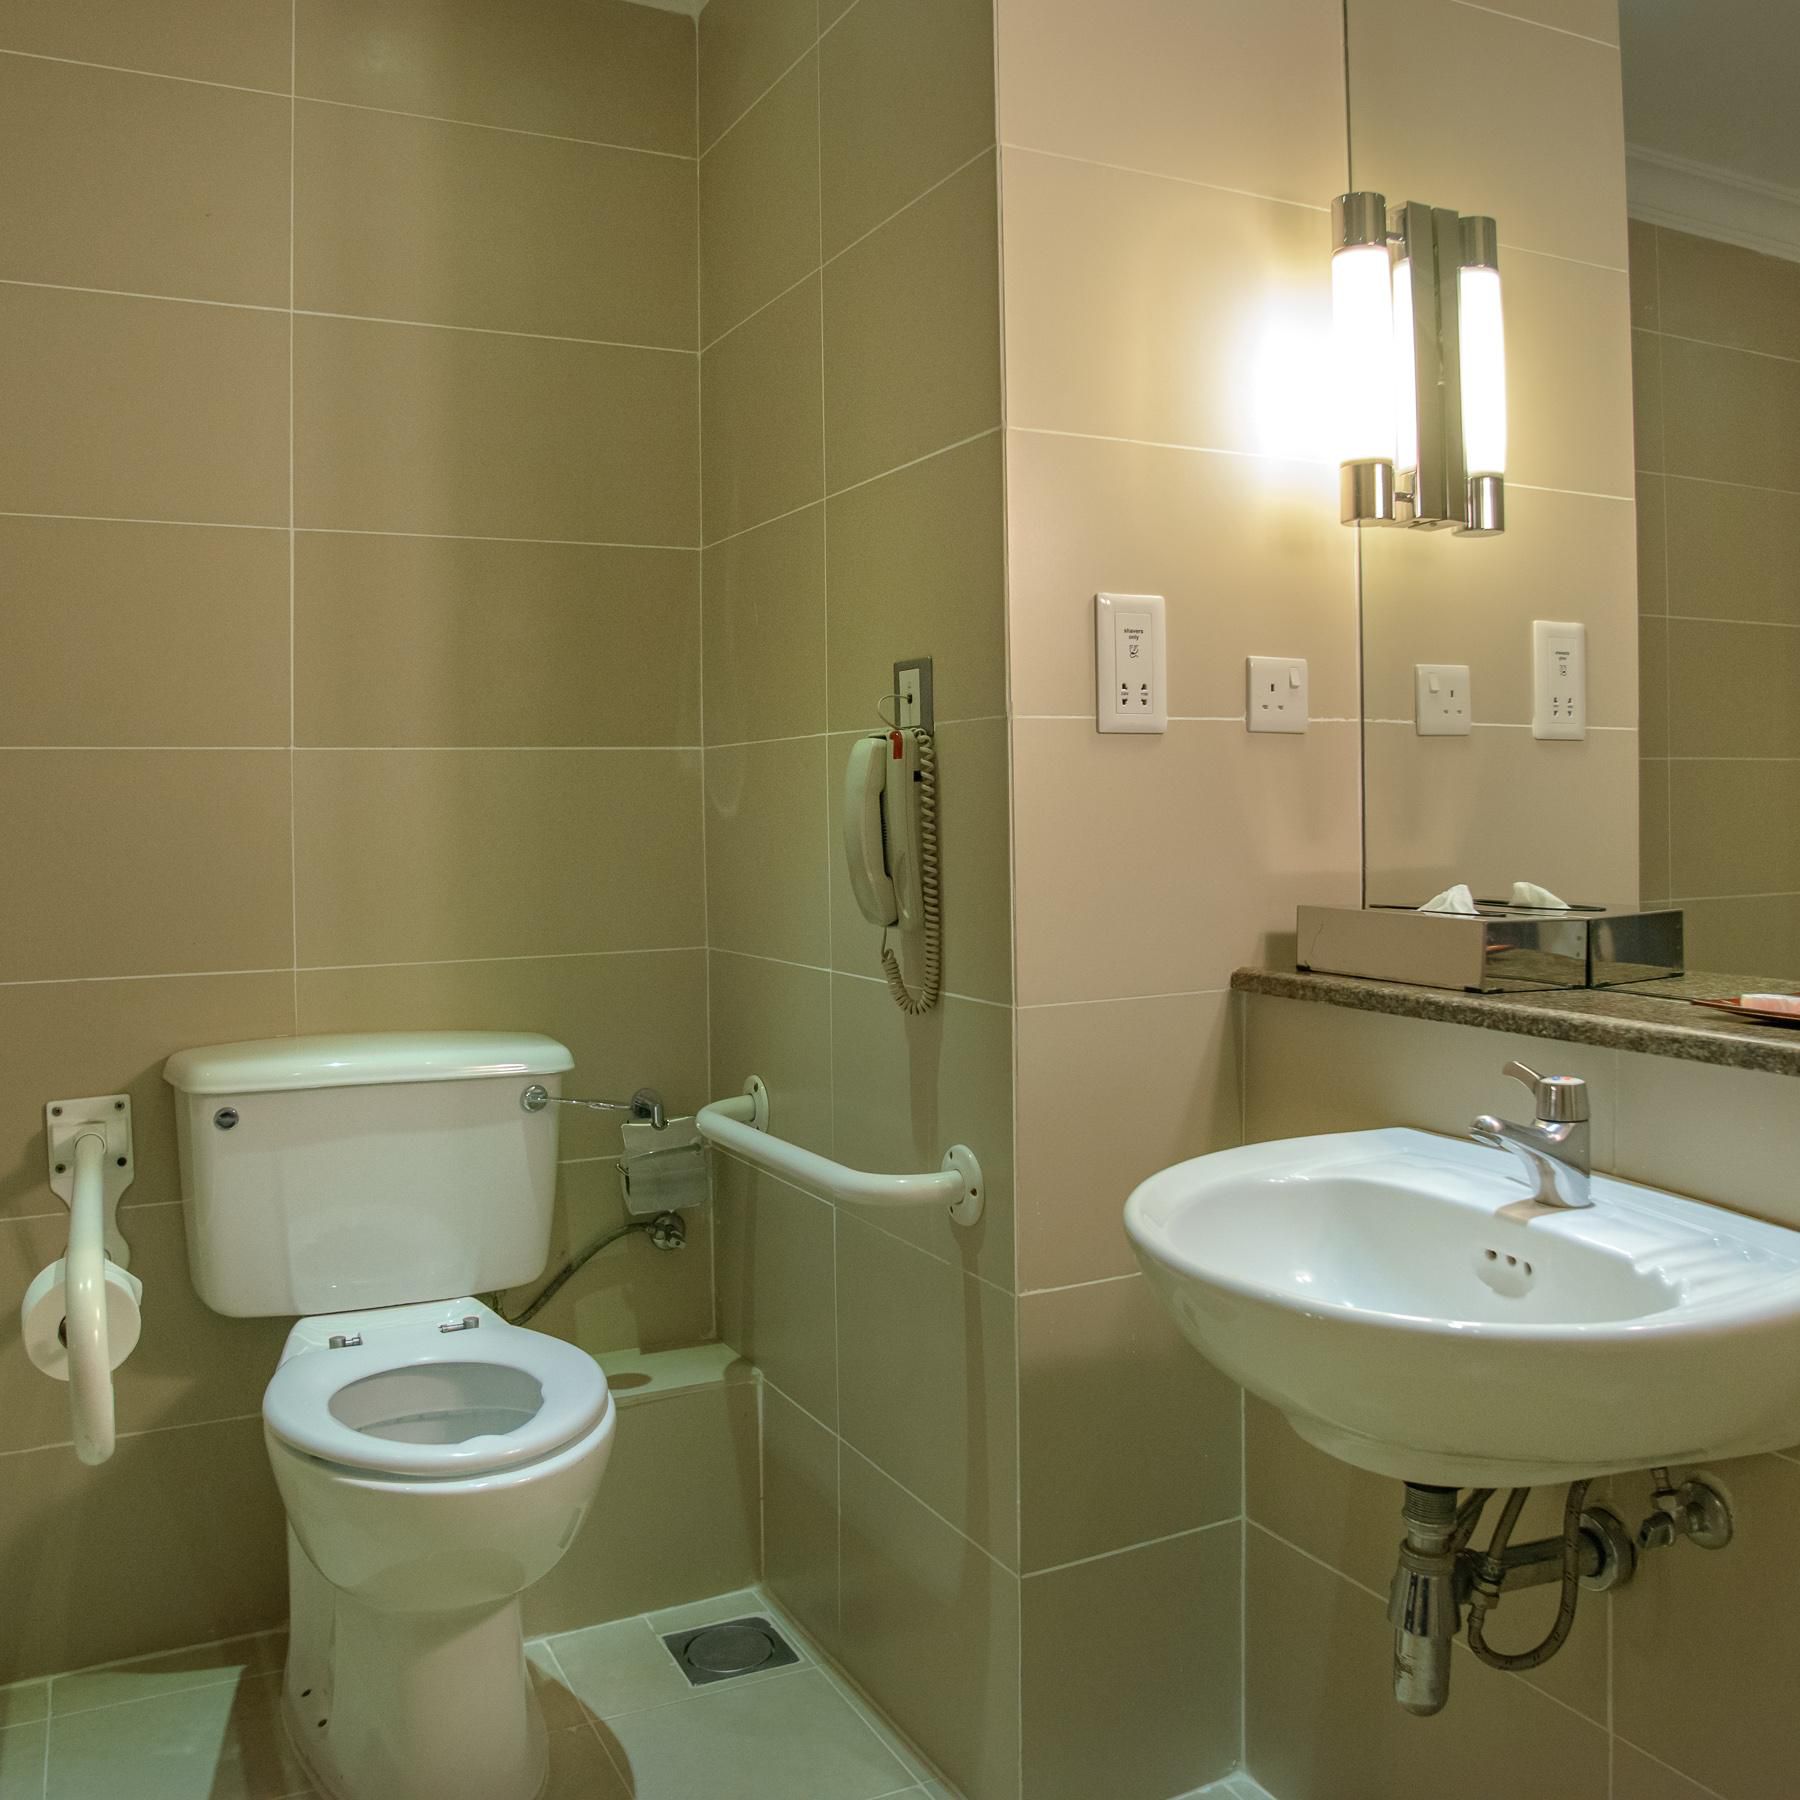  Bathroom - paraplegic rooms